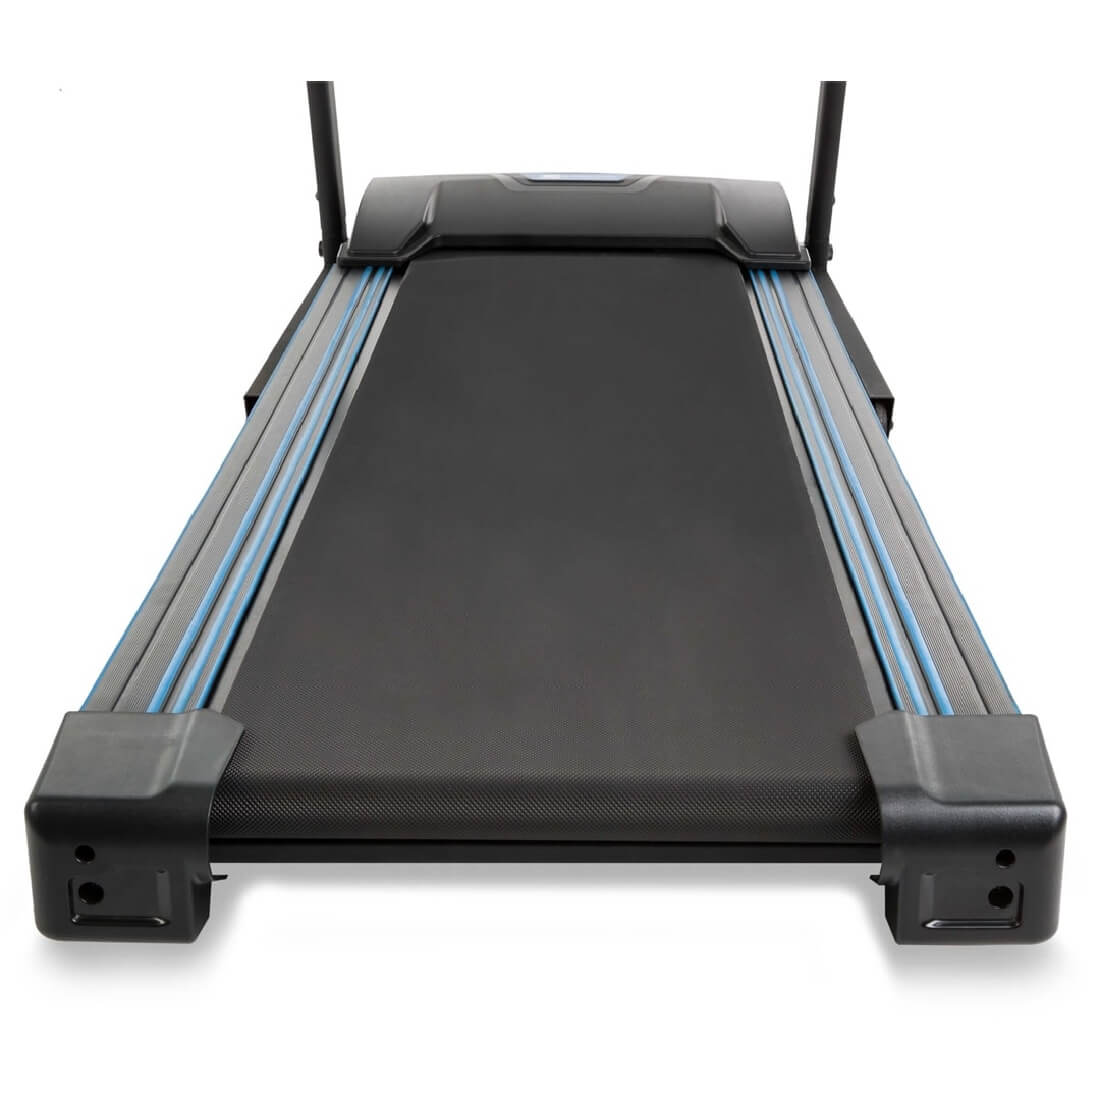 TR180 Xterra  Treadmill smooth running surface